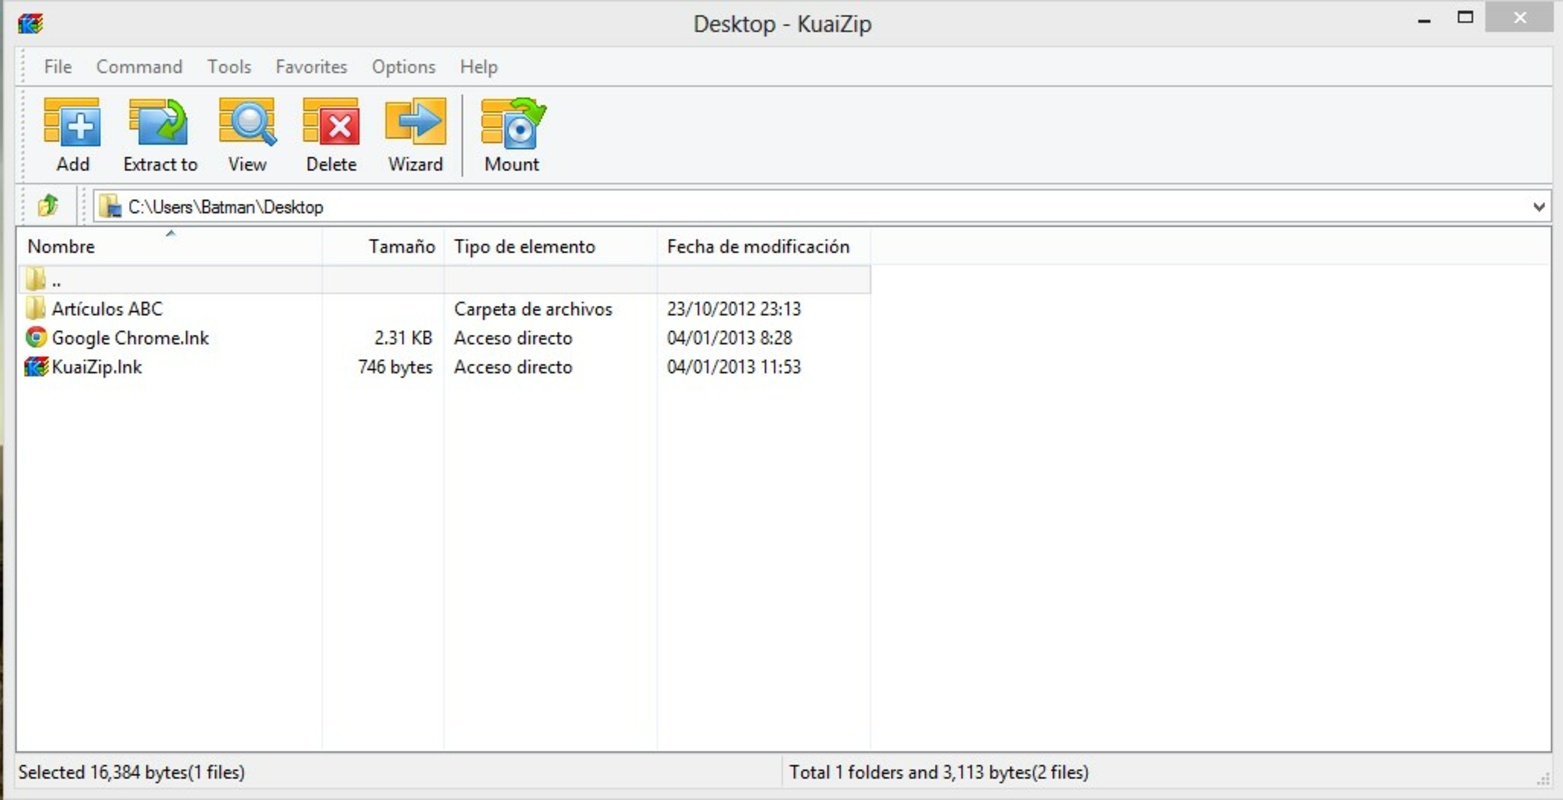 KuaiZip 2.3.2 for Windows Screenshot 1